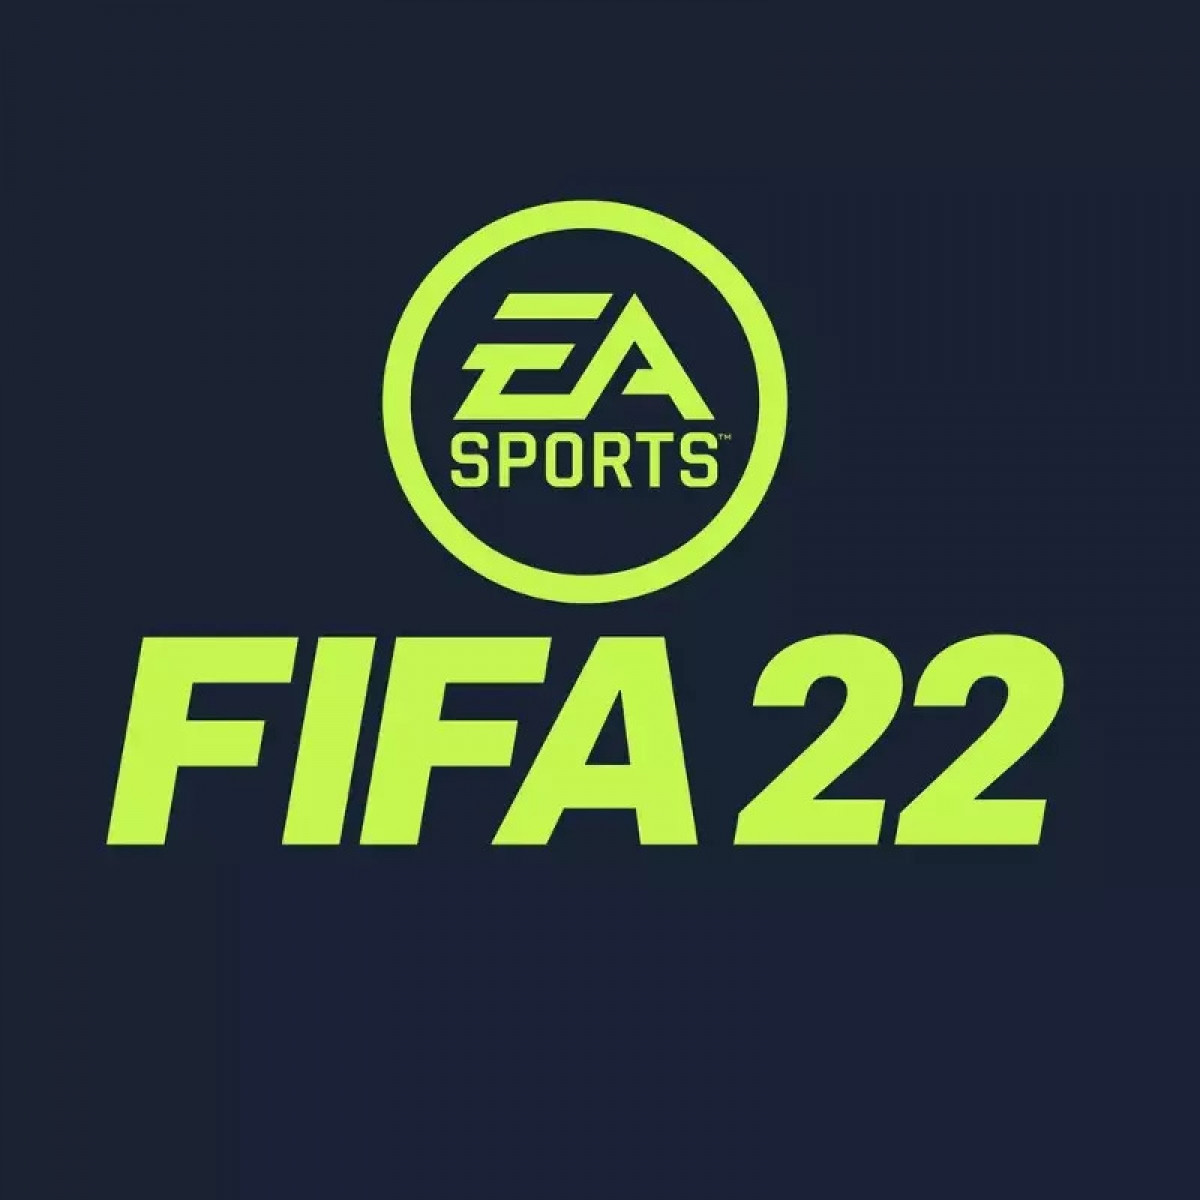 Top 10 cầu thủ có khả năng vươn tầm thành siêu sao trong FIFA 22 gồm: